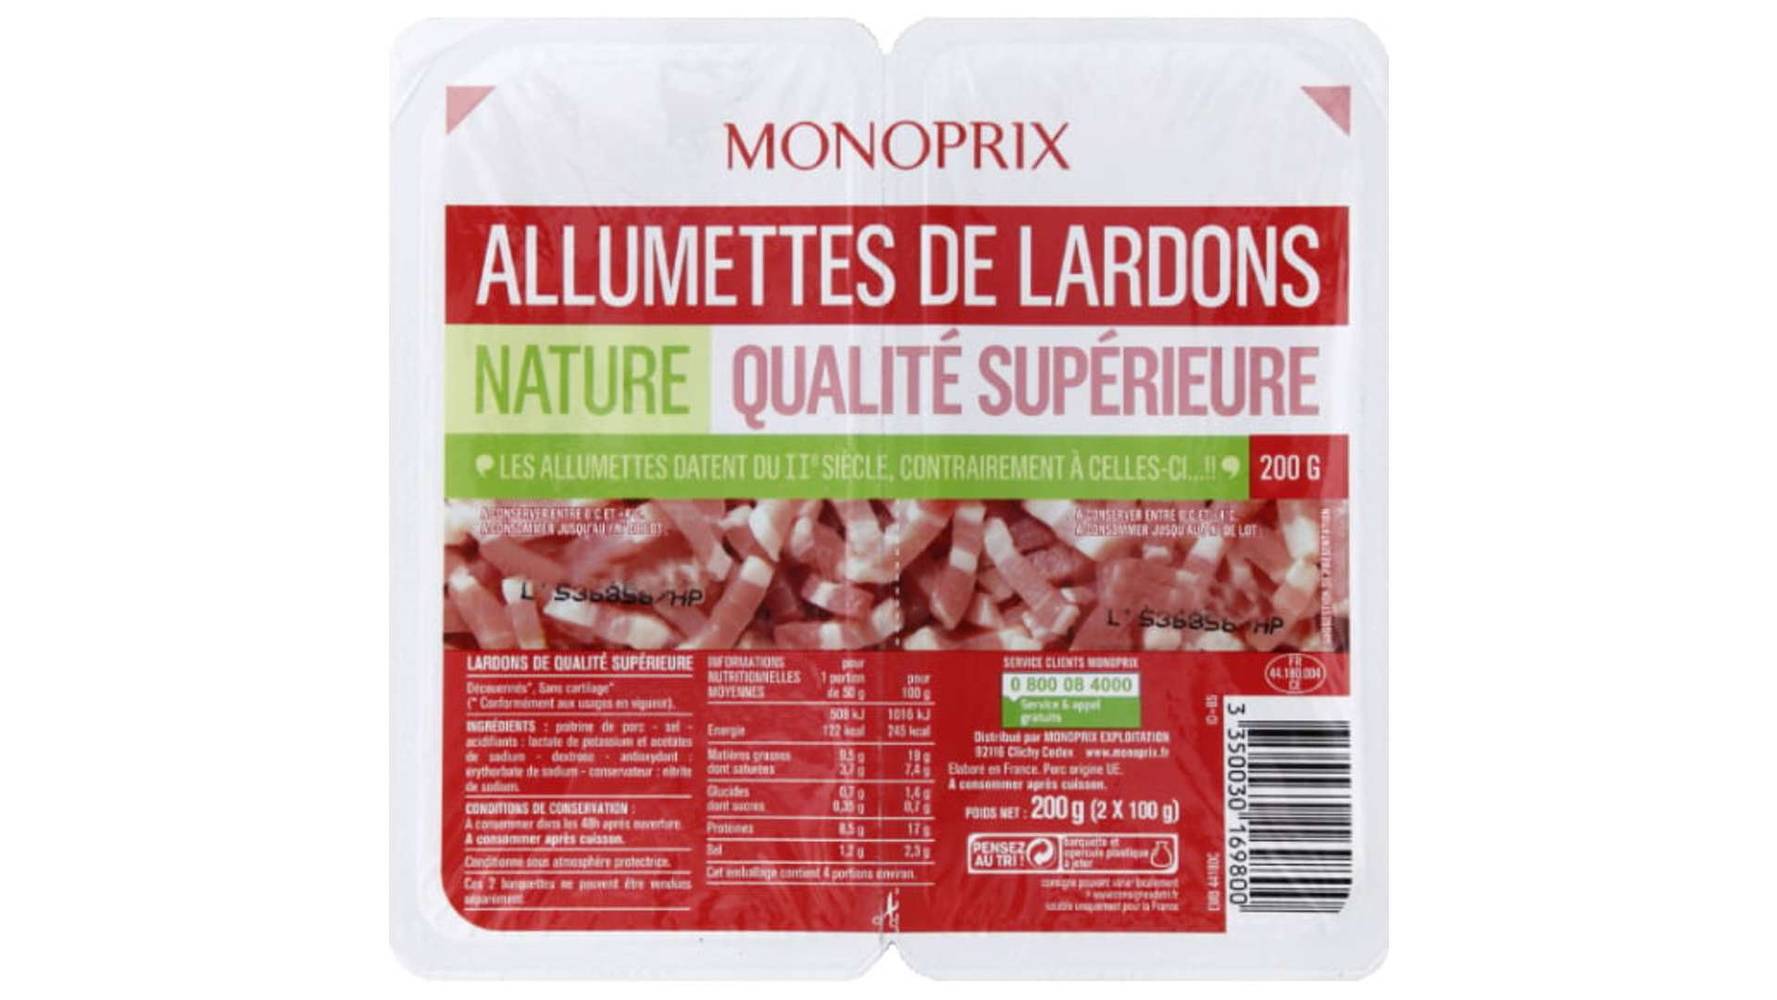 Monoprix Allumettes de lardons nature qualité supérieure Les 2 barquettes de 100g